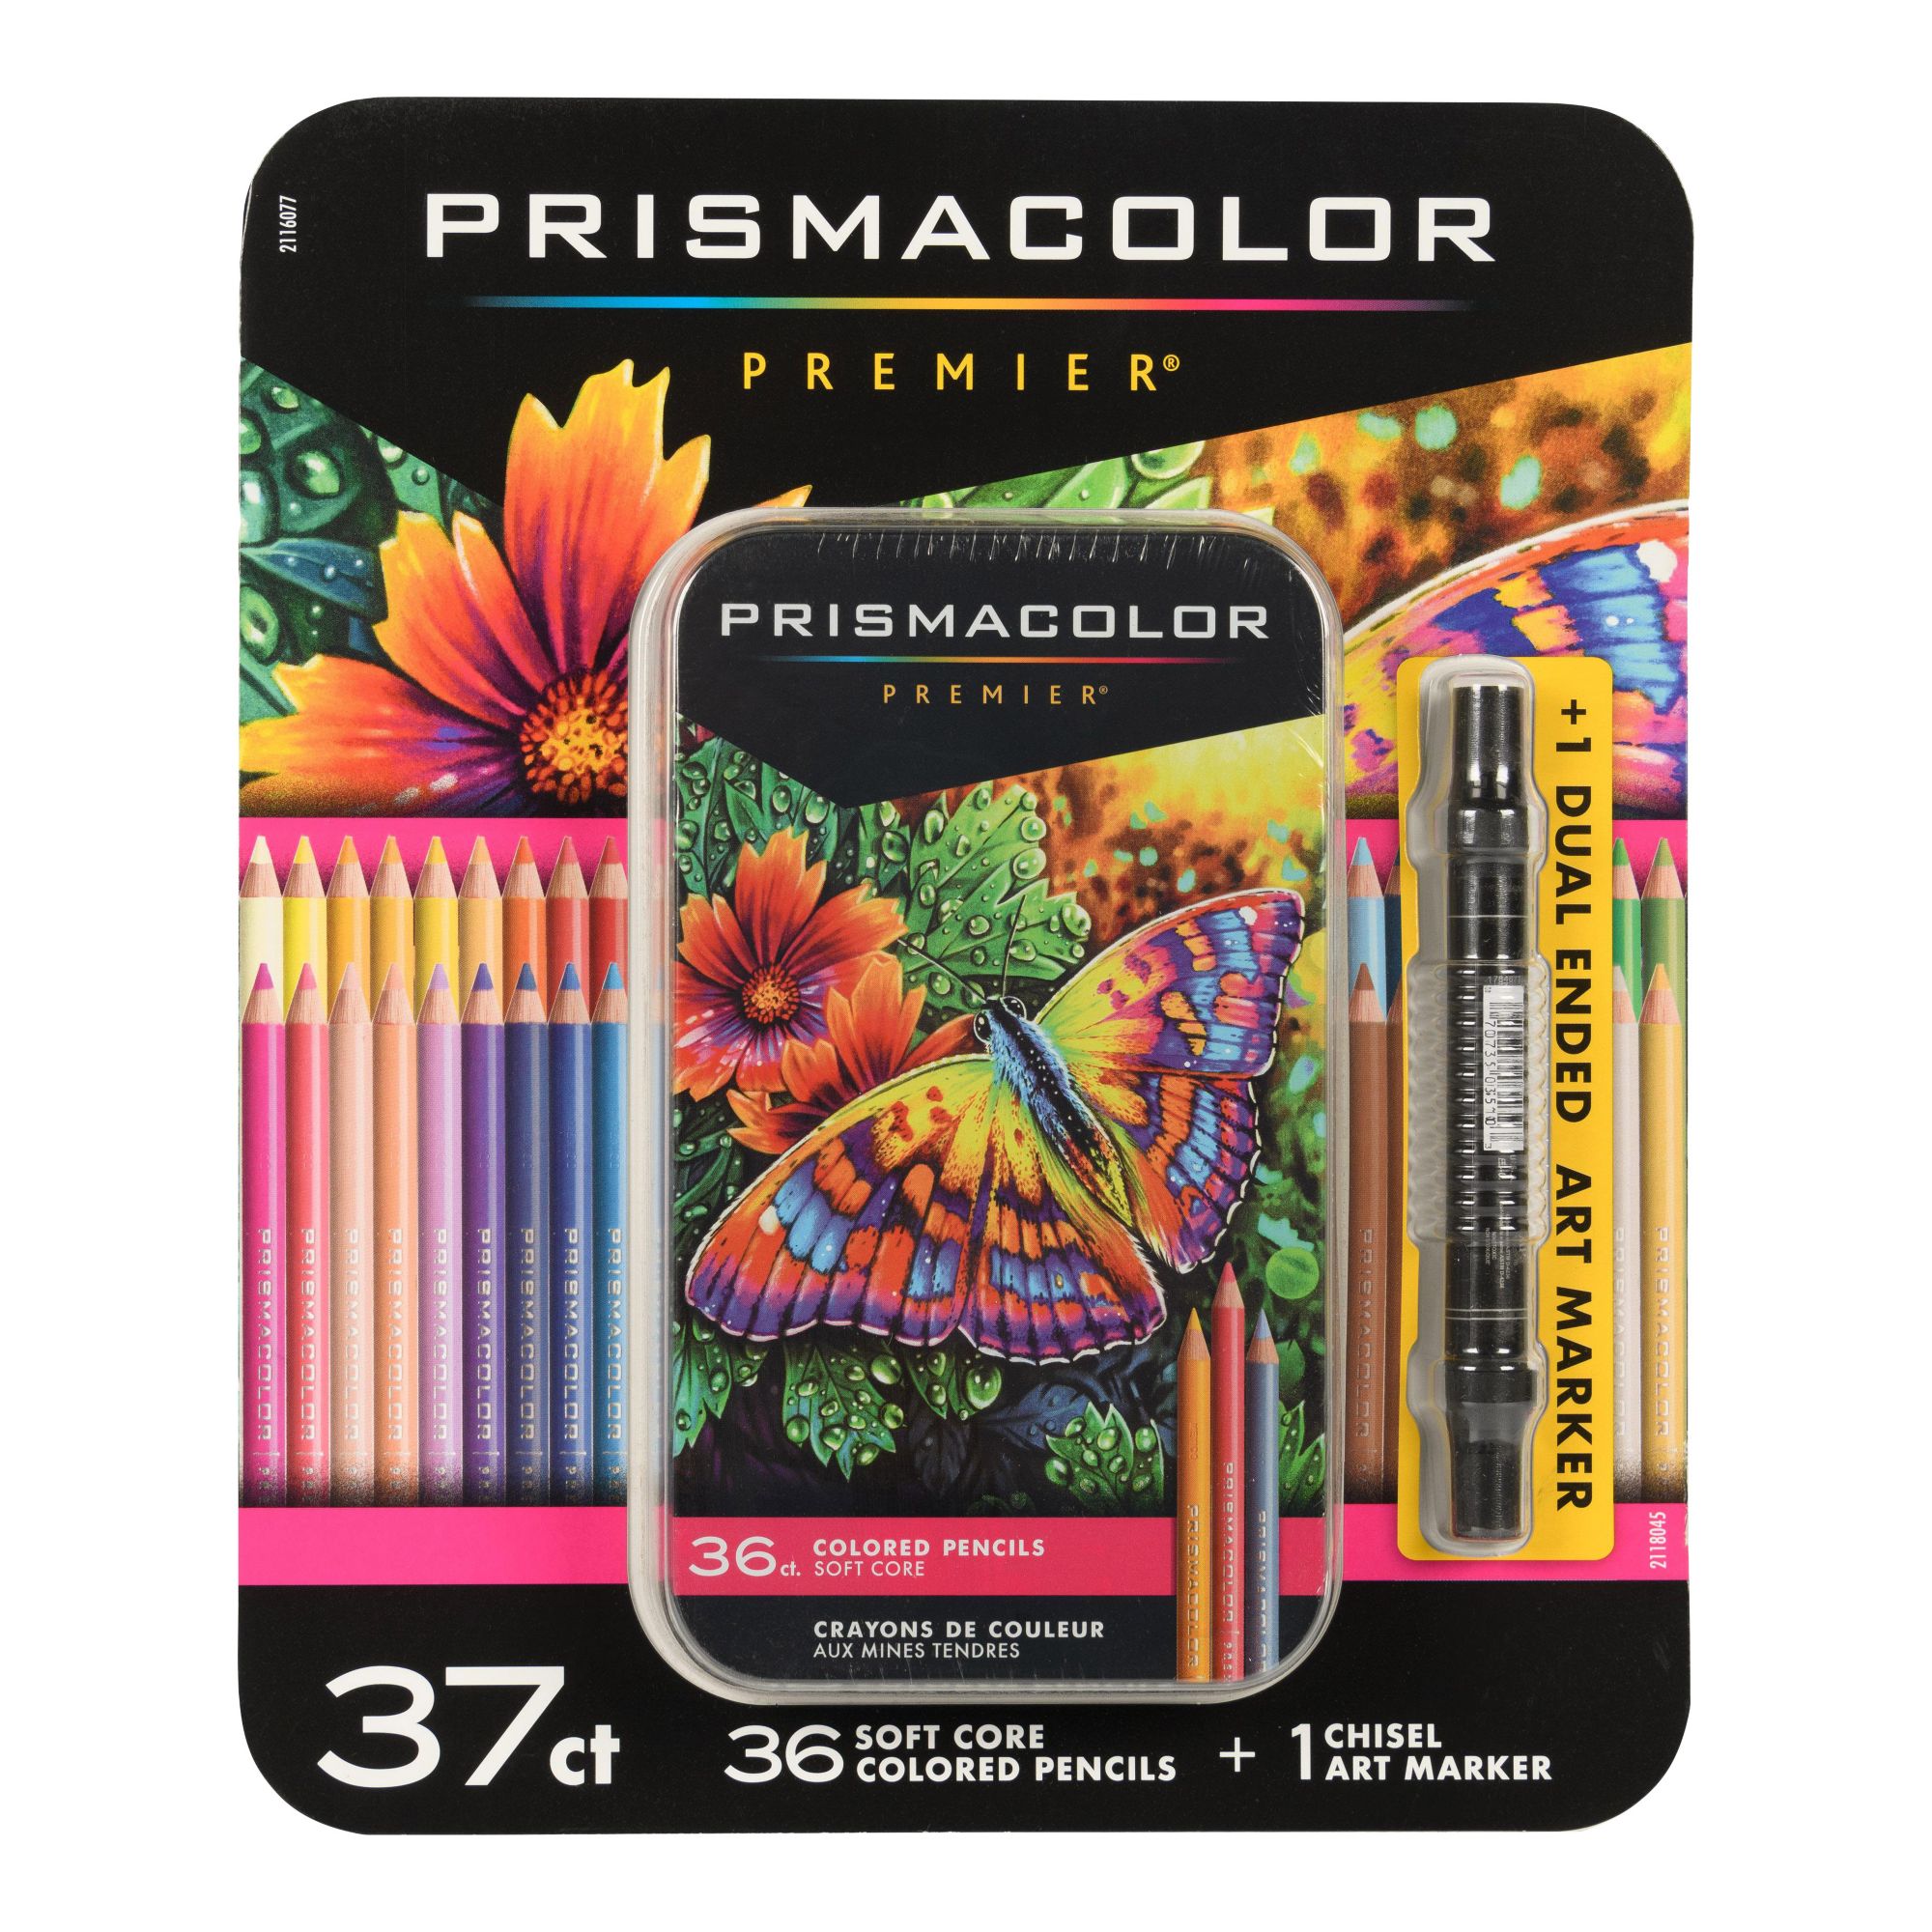 Prismacolor Marker Sets